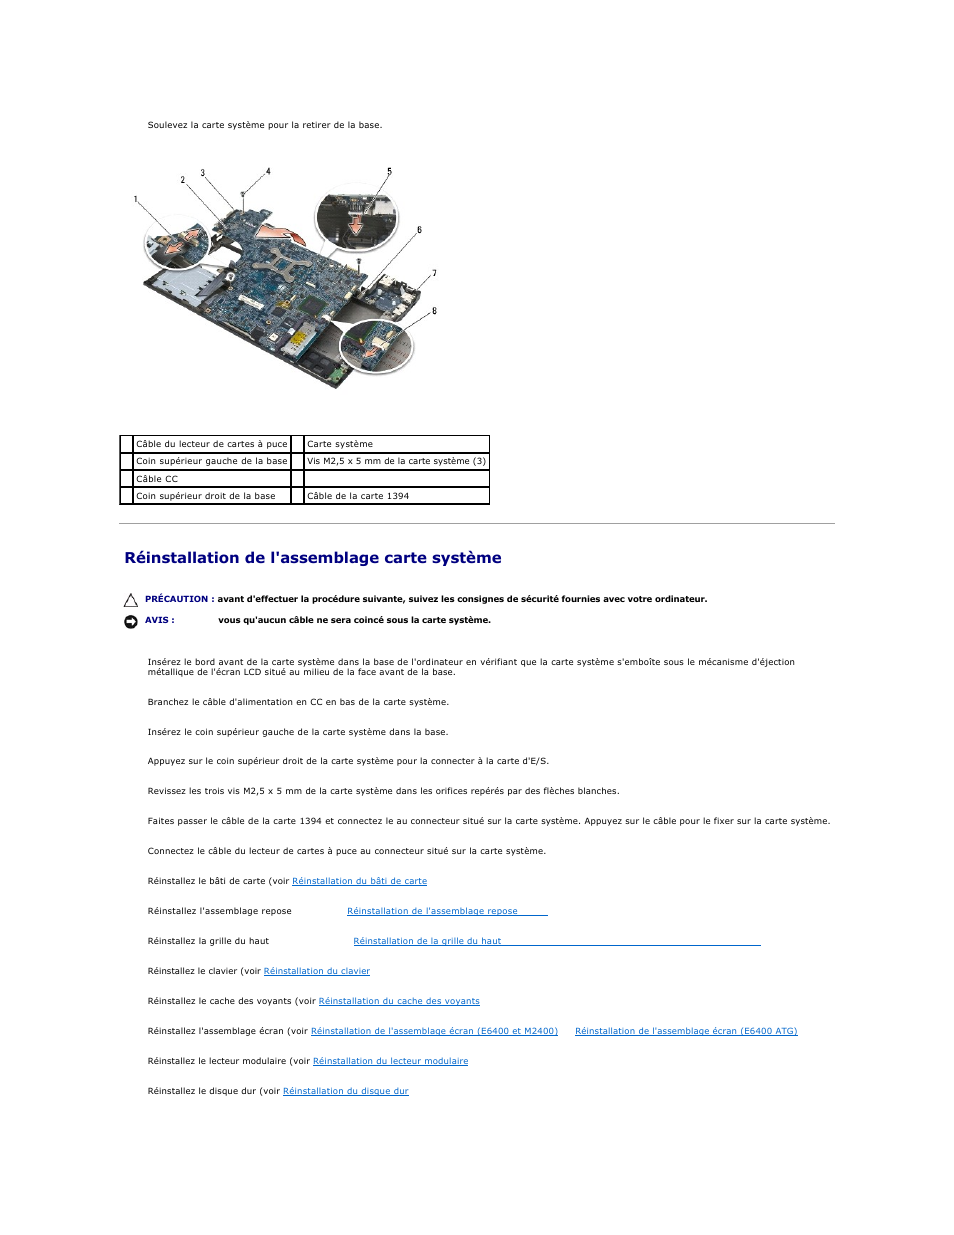 Réinstallation de l'assemblage carte système | Dell Precision M2400 (Mid 2008) Manuel d'utilisation | Page 85 / 104